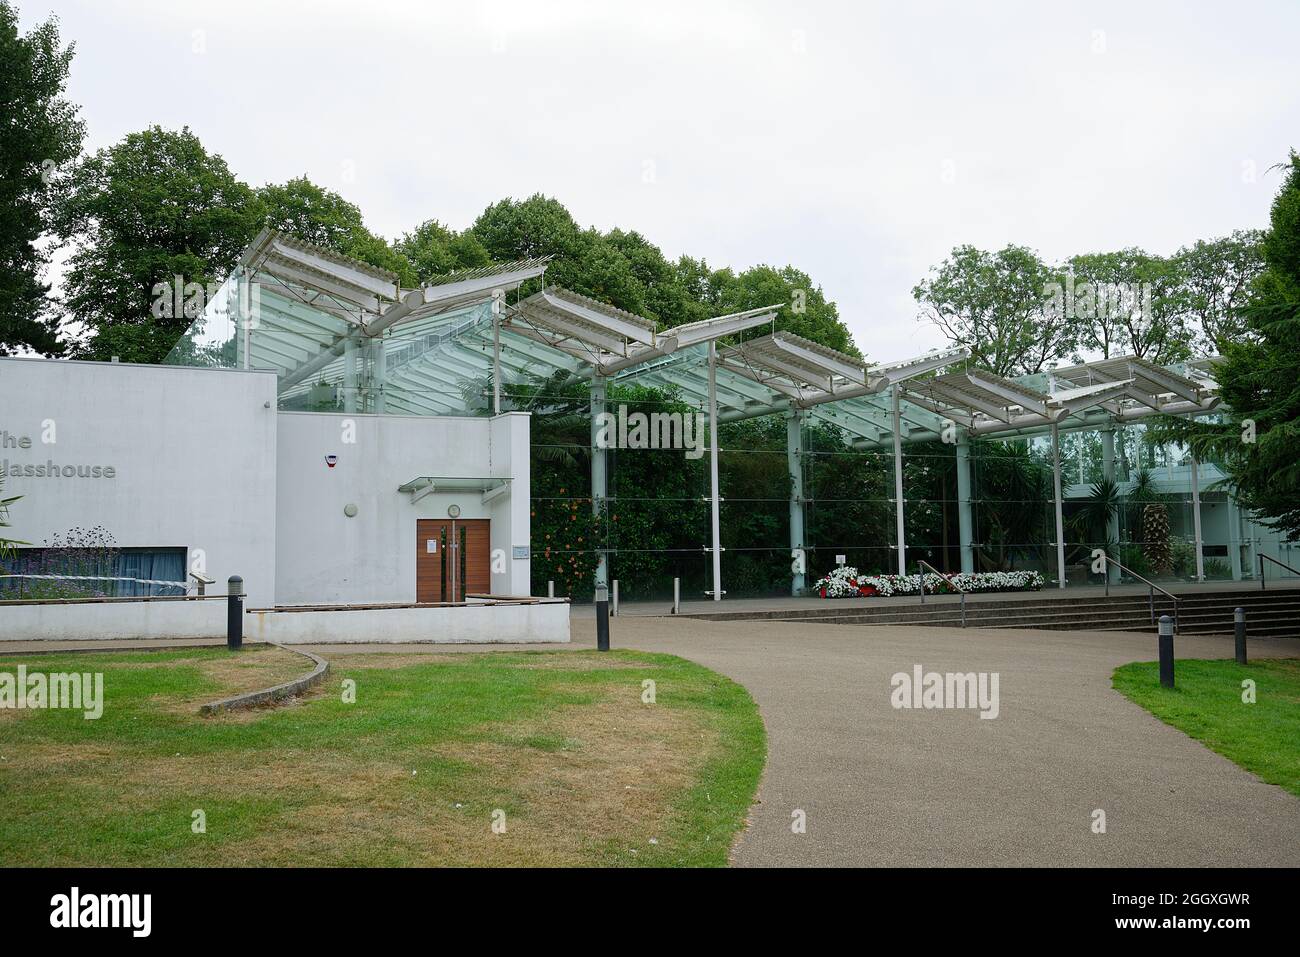 The Glasshouse, in Jephson Gardens, Royal Leamington Spa, Warwickshire, England. Es beherbergt eine Reihe exotischer tropischer und gemäßigter Pflanzen. Stockfoto